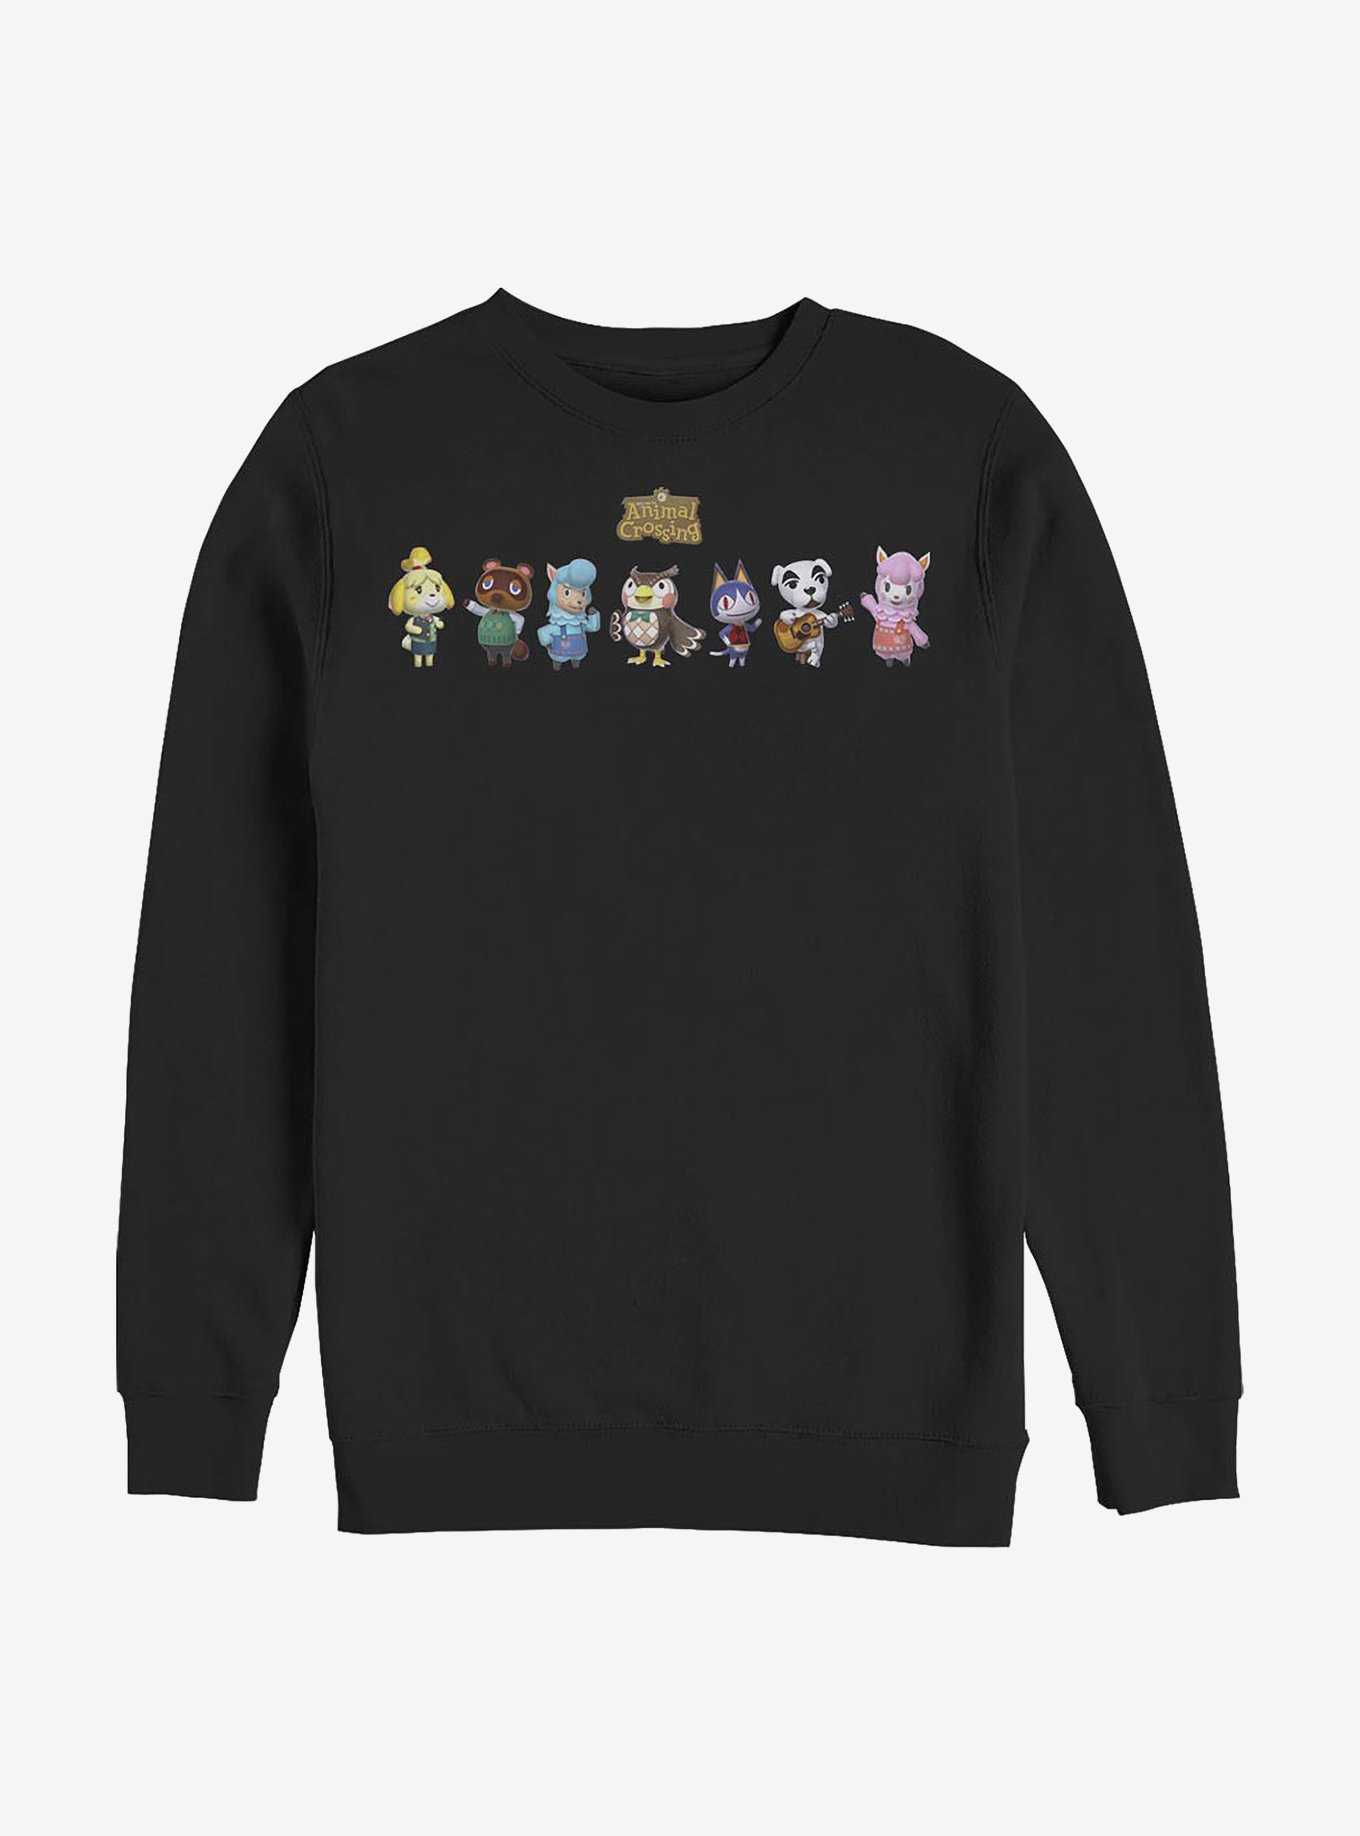 Animal Crossing Friendly Neighbors Sweatshirt, , hi-res